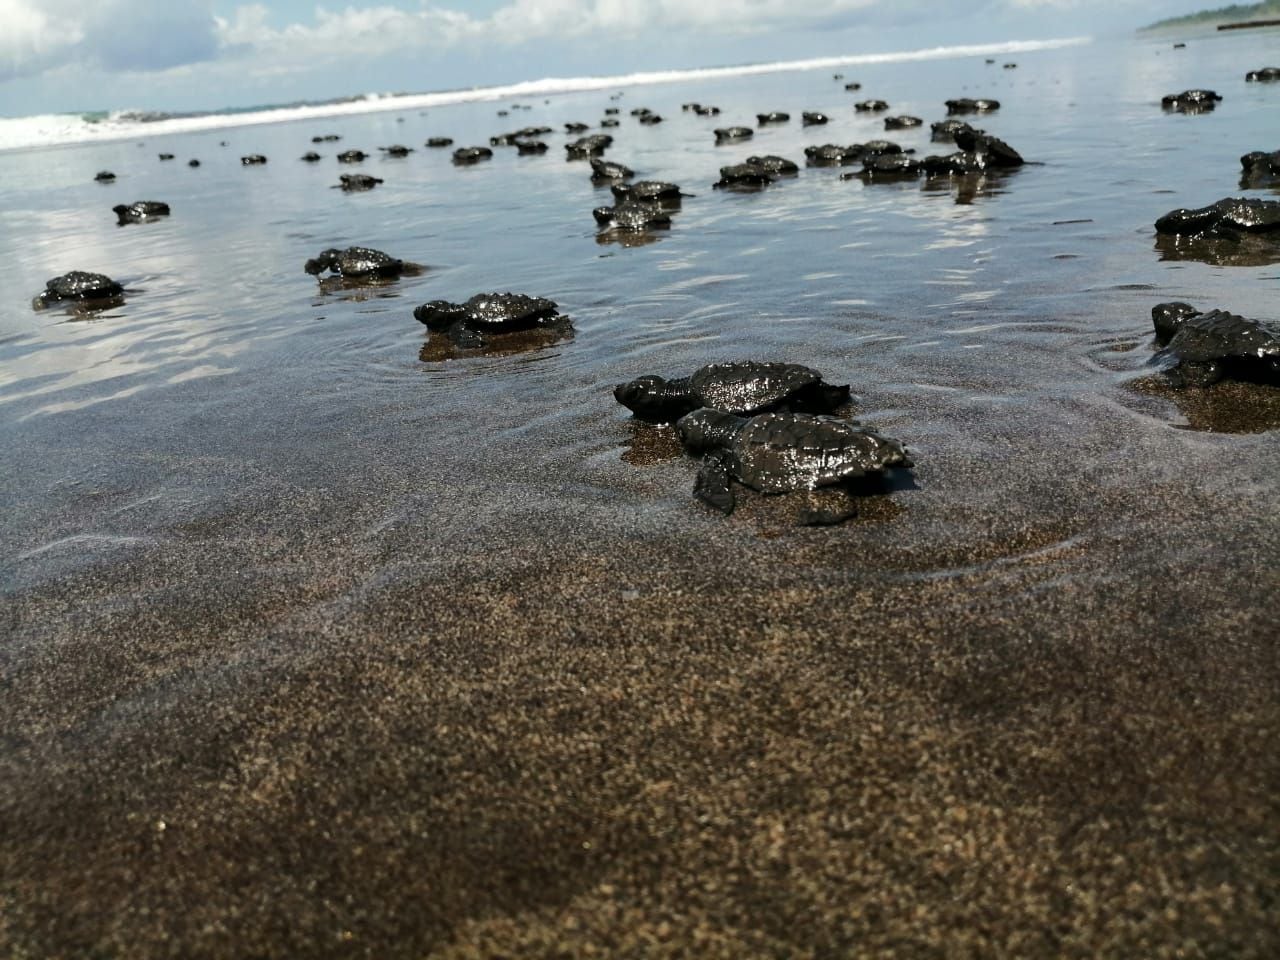 Las playas de El Valle, en Bahía Solano, son el lugar de mayor anidación de tortugas golfinas de la costa pacífica suramericana. Aquí se han priorizado programas de conservación para recolectar los huevos que dejan las tortugas en la playa, trasladarlos a un nido seguro y luego liberar a las pequeñas tortugas.